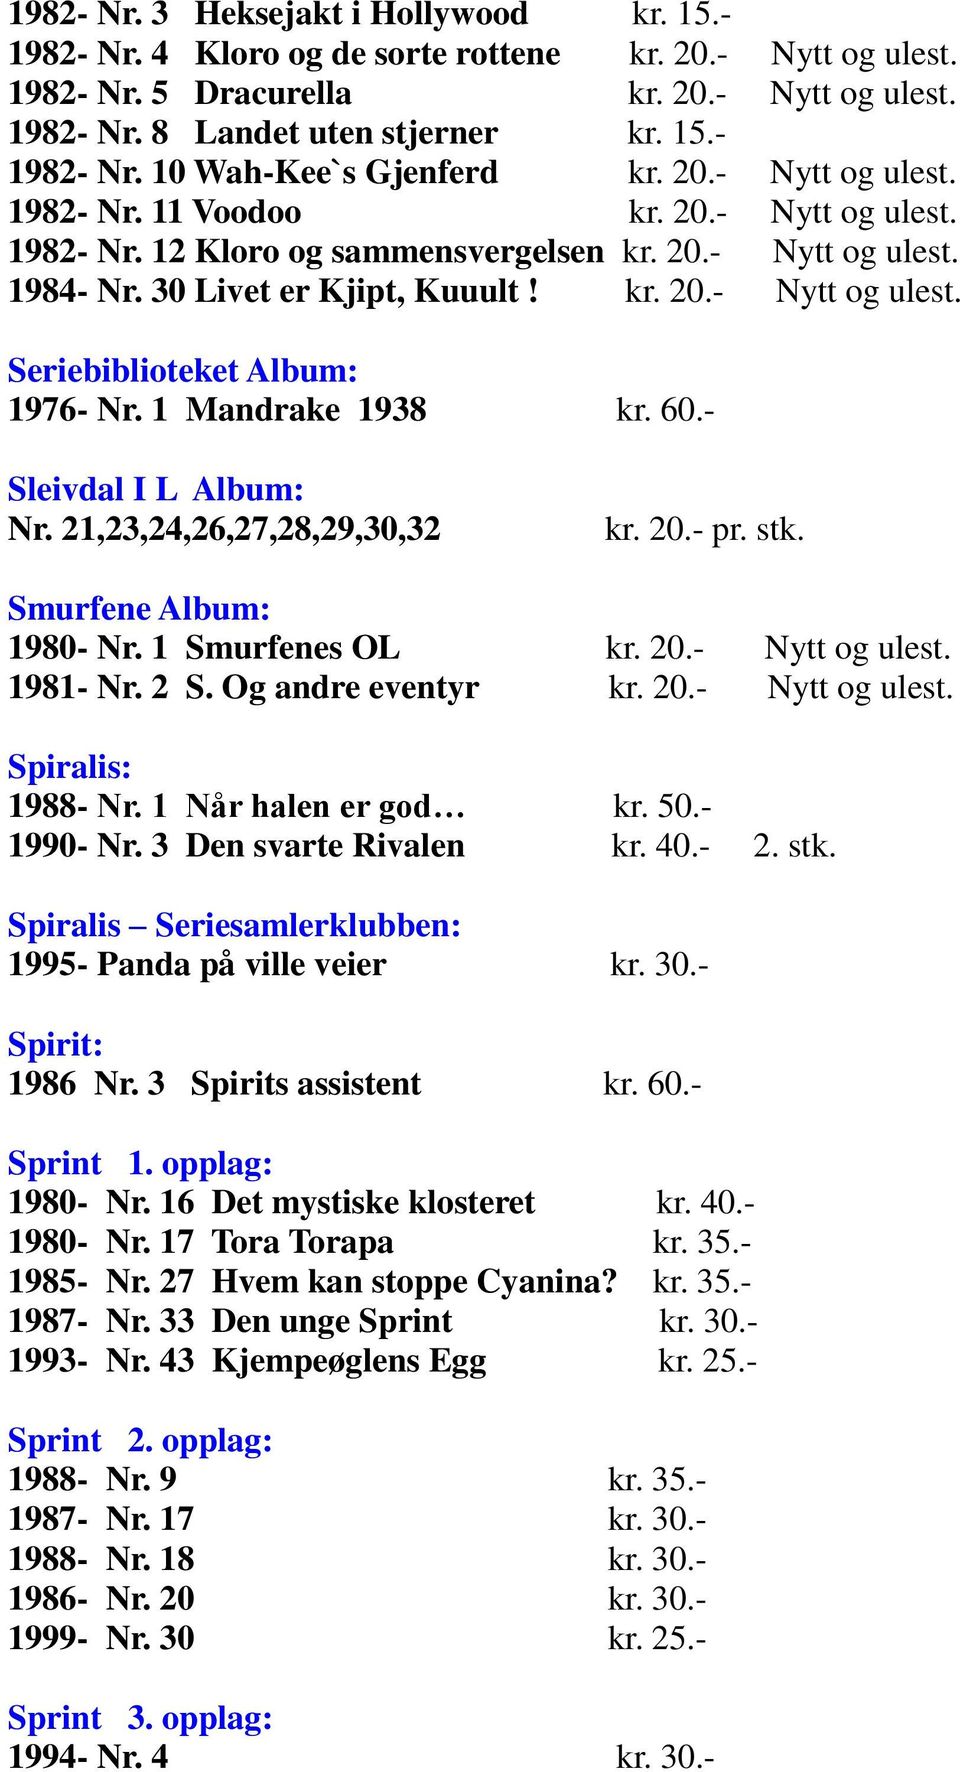 1 Mandrake 1938 kr. 60.- Sleivdal I L Album: Nr. 21,23,24,26,27,28,29,30,32 kr. 20.- pr. stk. Smurfene Album: 1980- Nr. 1 Smurfenes OL kr. 20.- Nytt og ulest. 1981- Nr. 2 S. Og andre eventyr kr. 20.- Nytt og ulest. Spiralis: 1988- Nr.